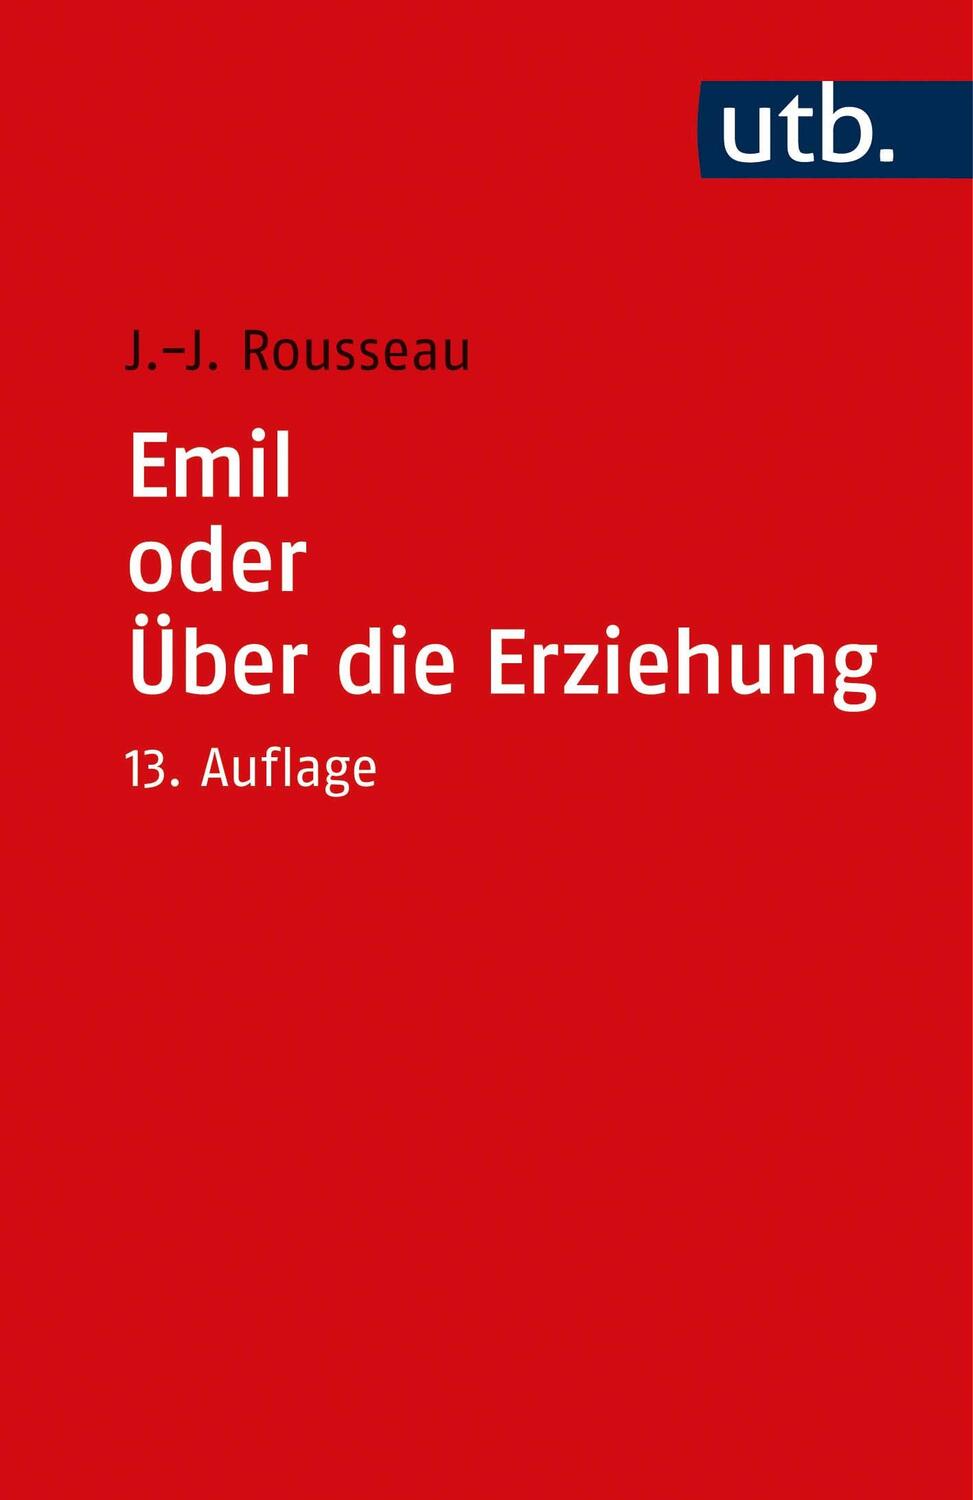 Emile oder Über die Erziehung - Rousseau, Jean-Jacques